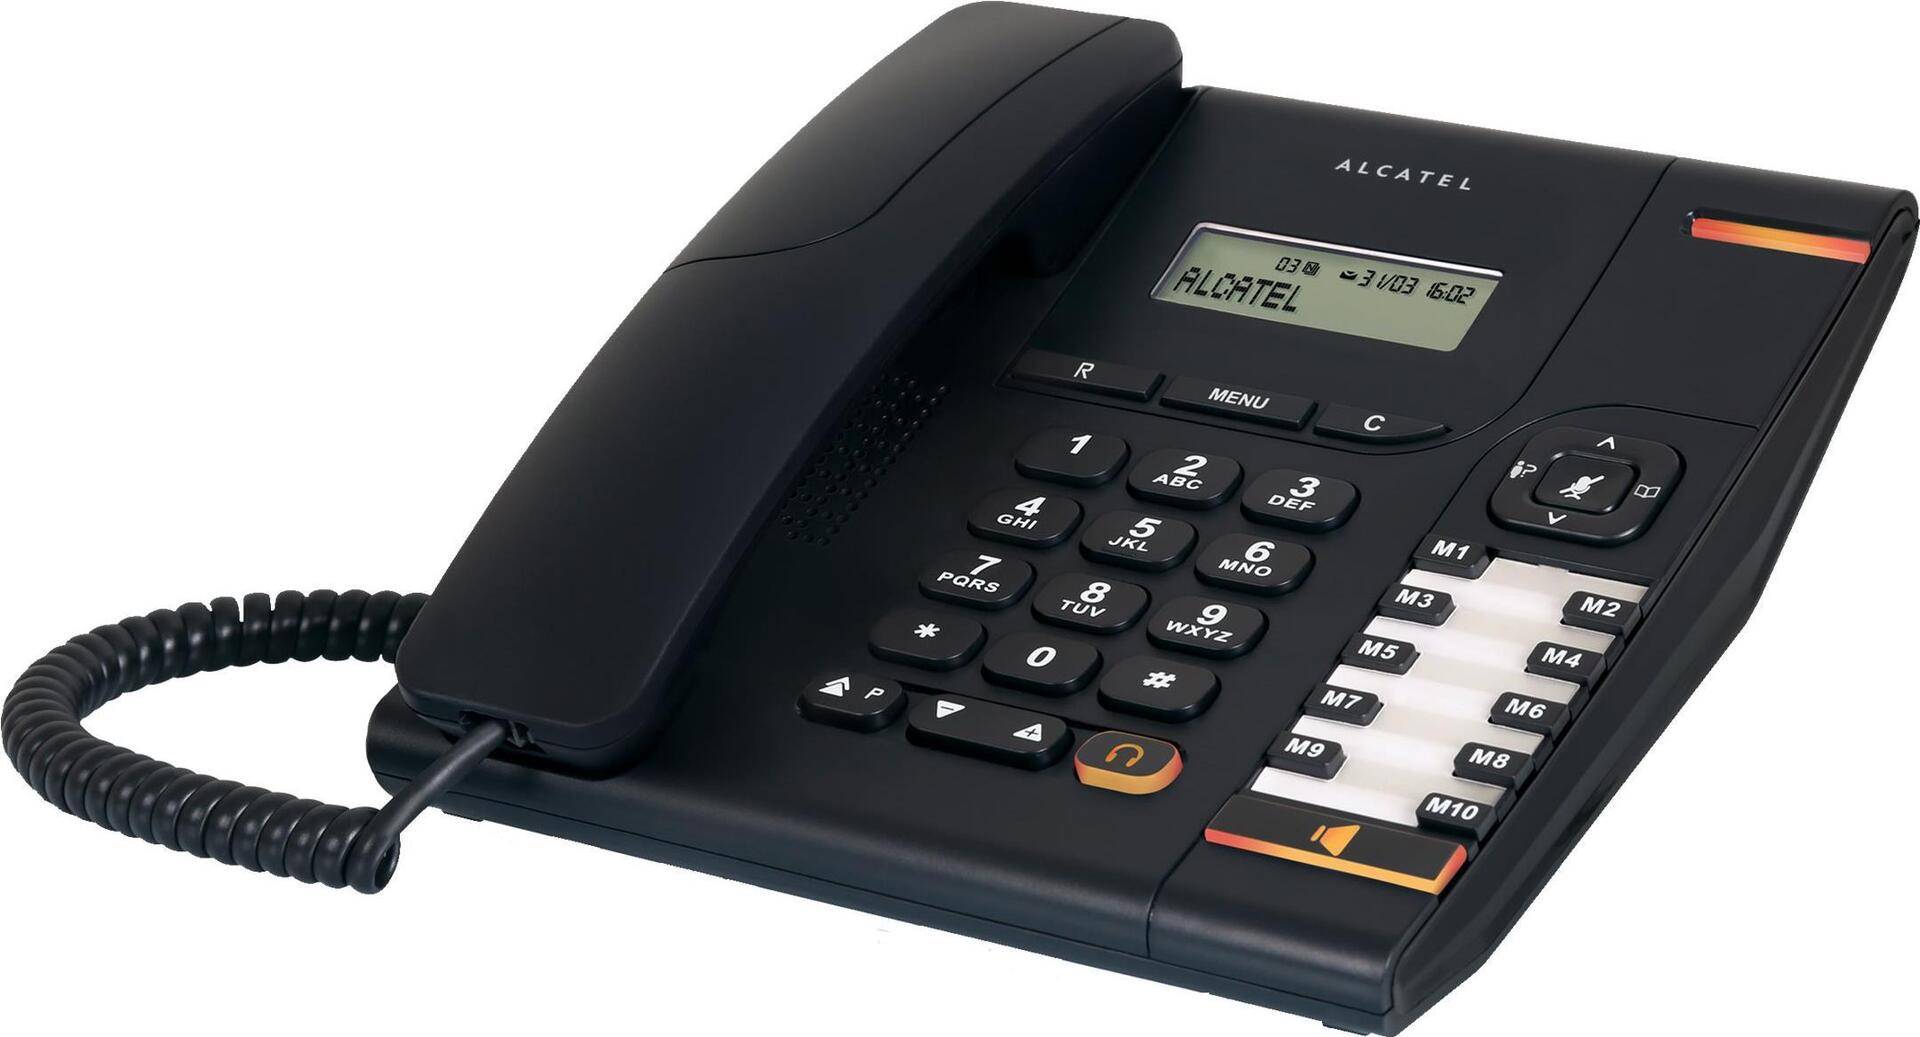 ATLINKS Alcatel Temporis 580 - Telefon mit Schnur mit Rufnummernanzeige - Schwarz (ATL1407525) von Alcatel